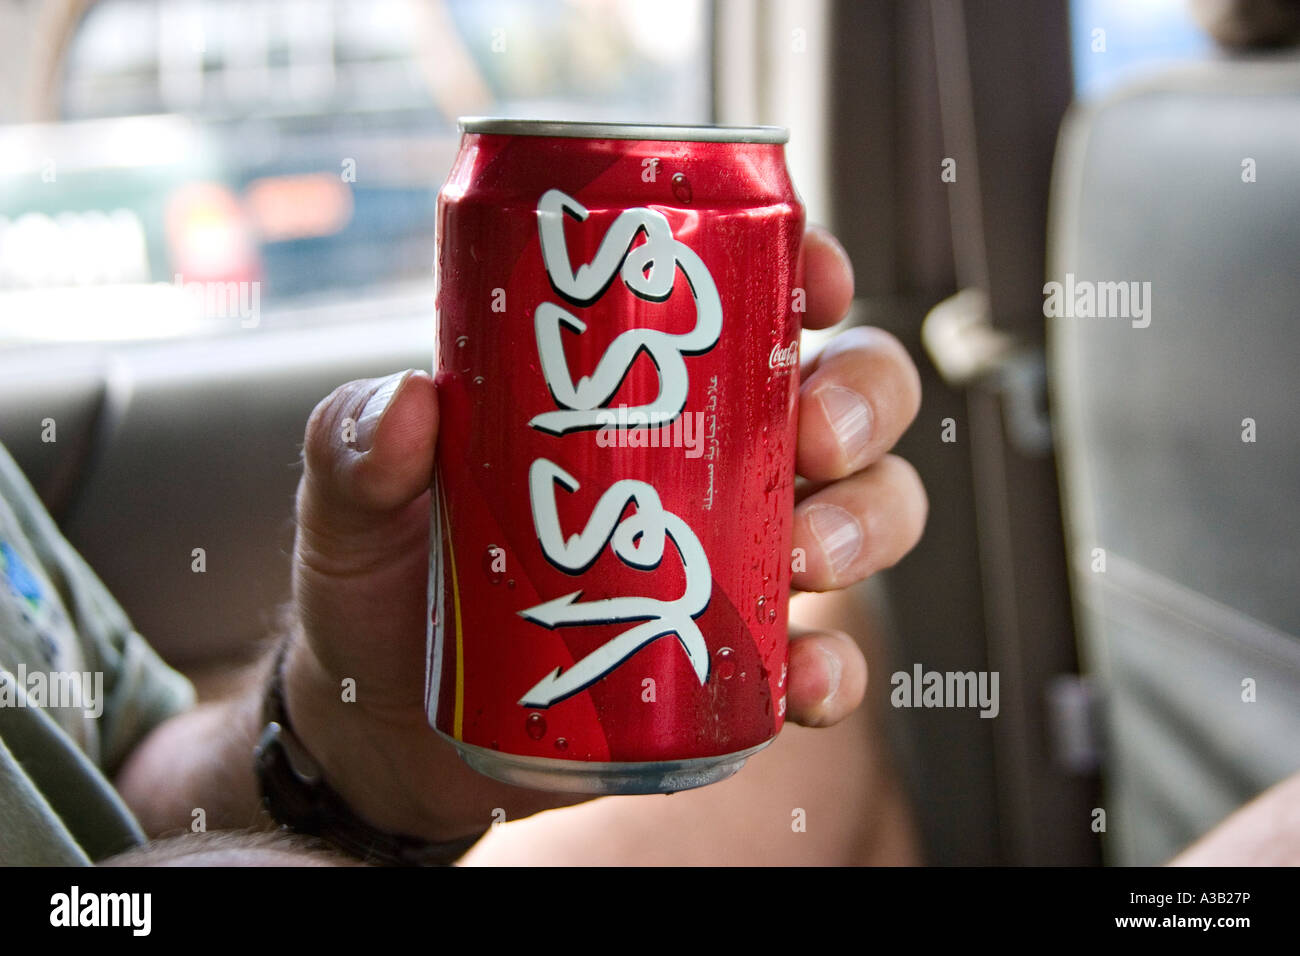 Coca-Cola pouvez rédigé en langue arabe, Djibouti, Afrique Banque D'Images